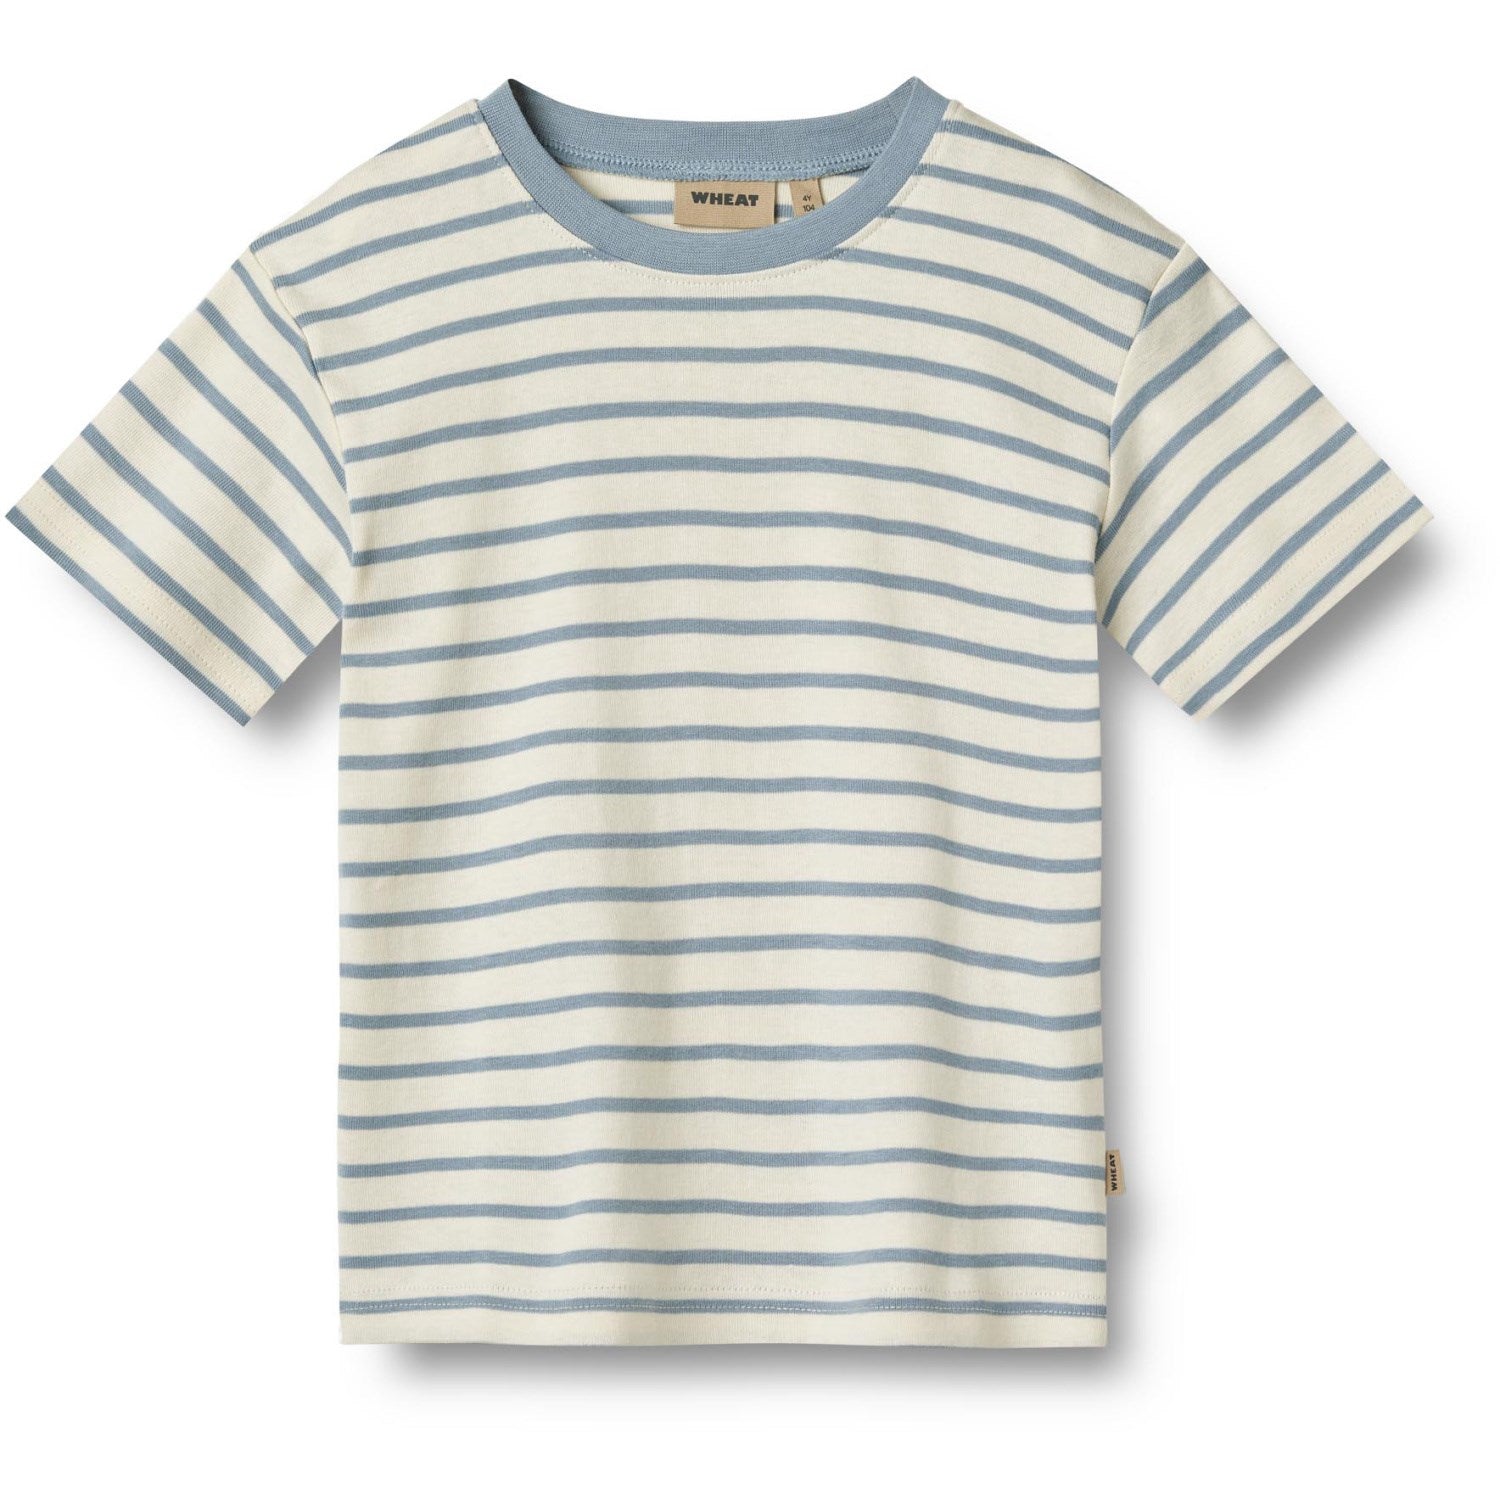 Wheat Shell Stripe T-shirt Fabian